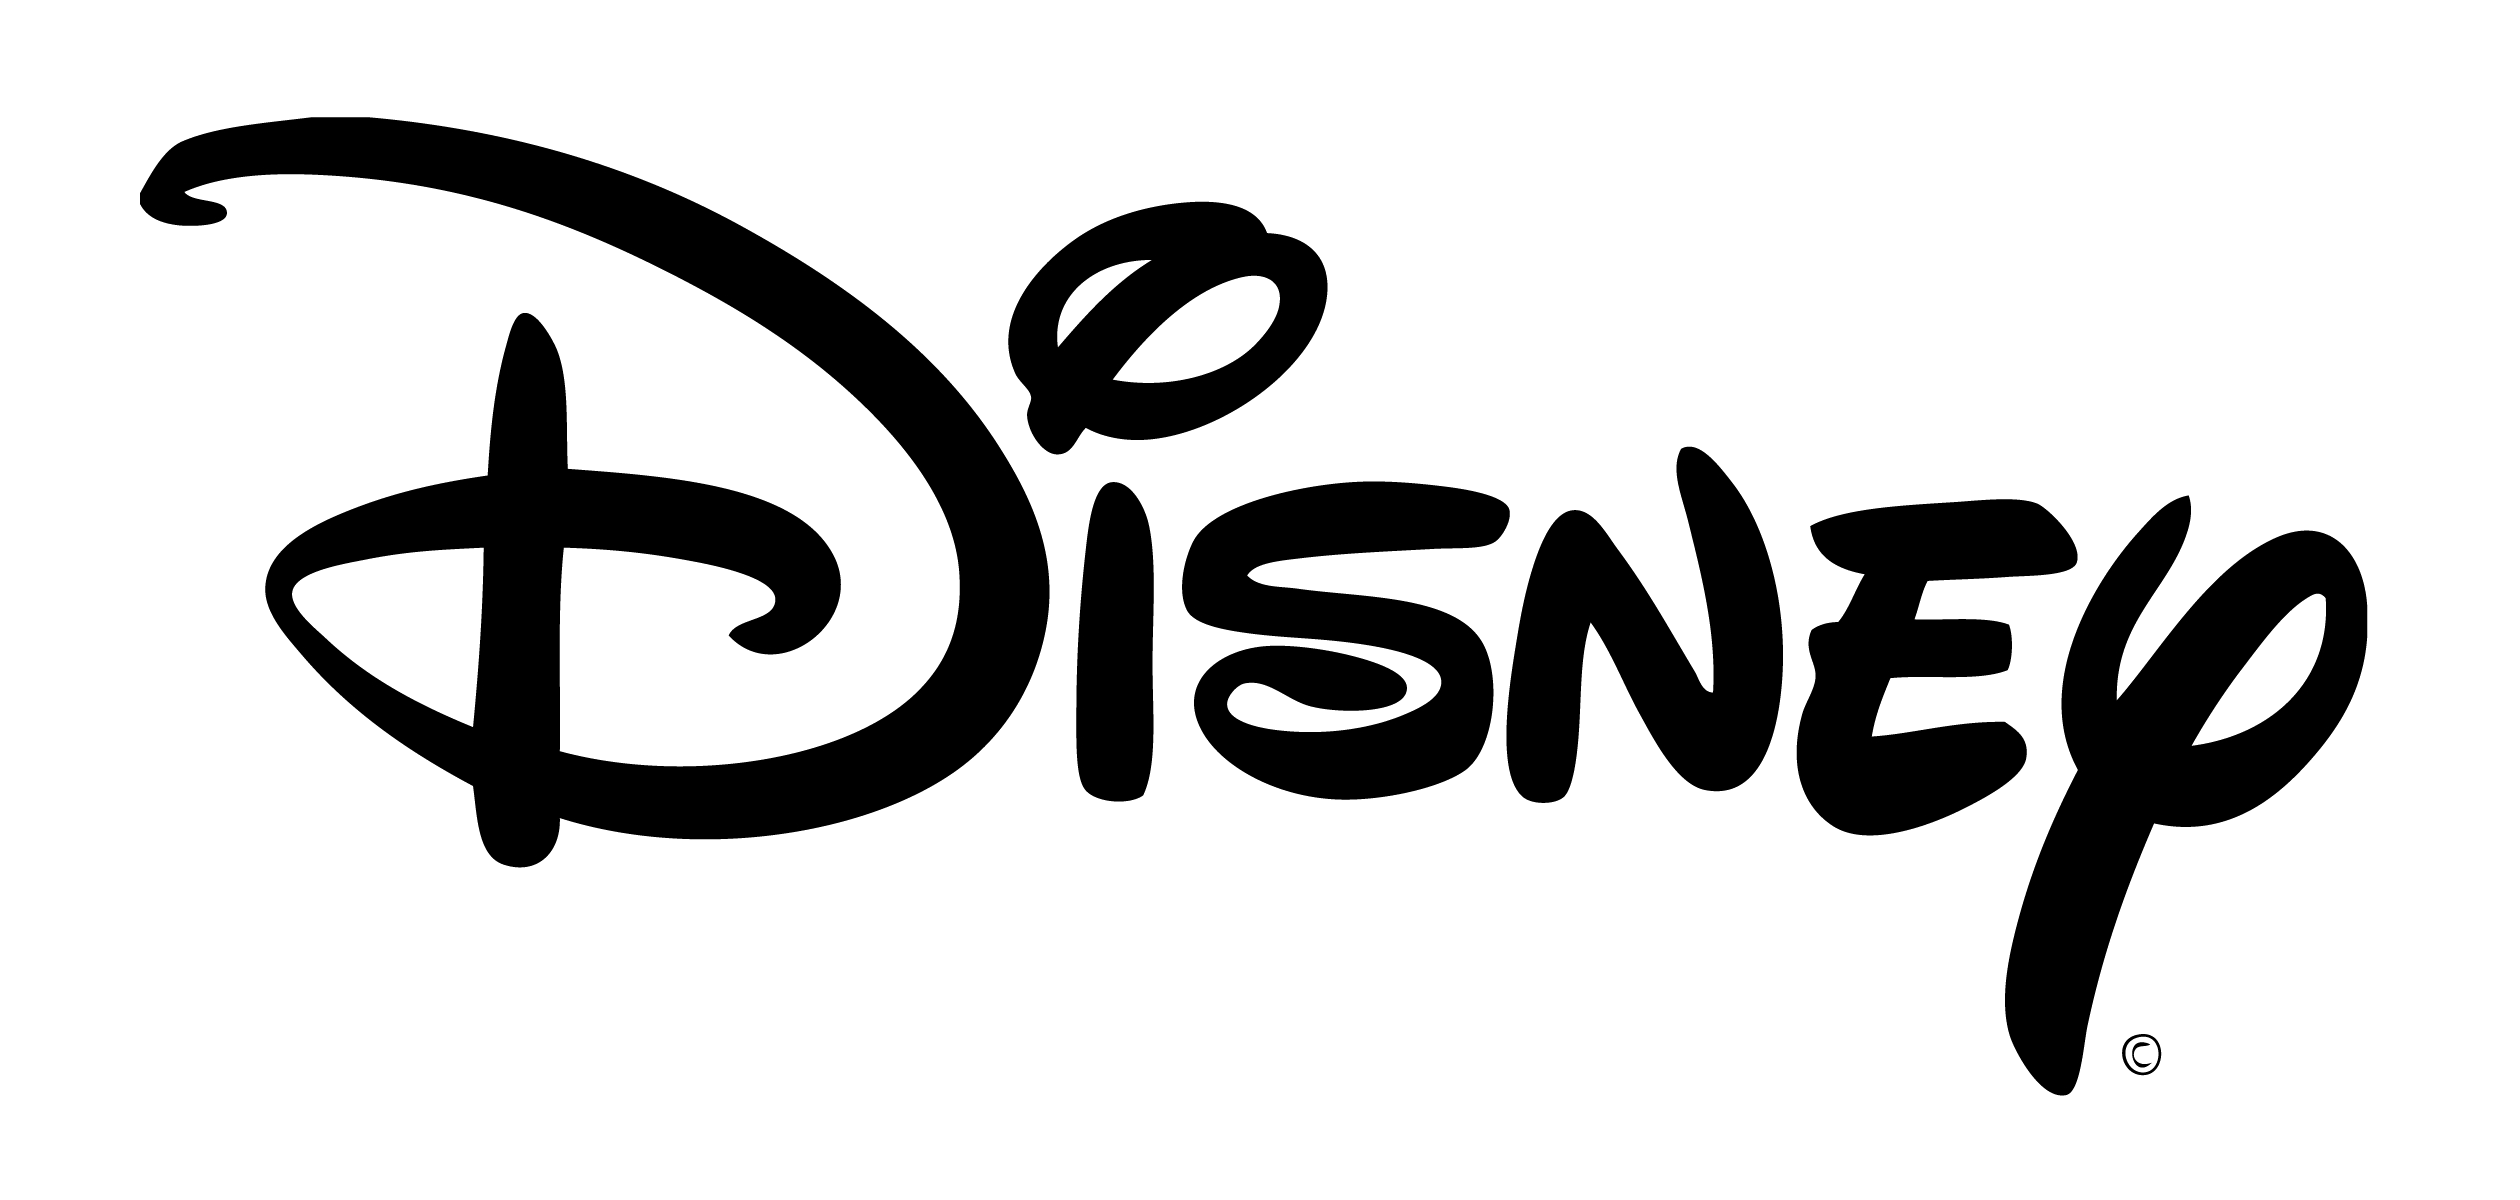 Disnesy Logo - Walt Disney logo PNG images free download